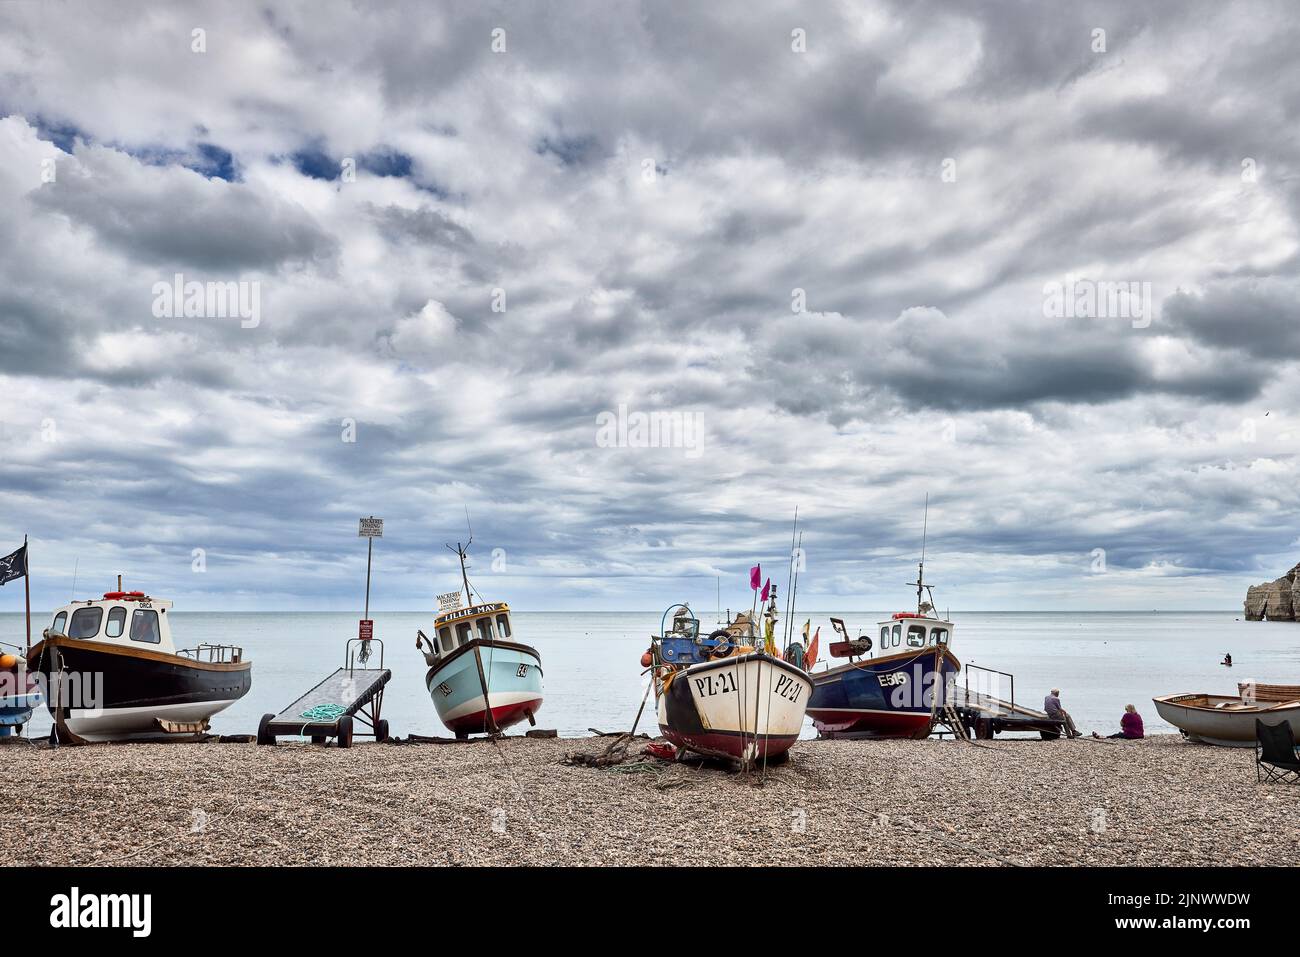 Pequeños barcos de pesca tradicionales se embarcaron en la playa de guijarros pedregosos de Beer, un pequeño pueblo costero de Devon en la costa jurásica Foto de stock